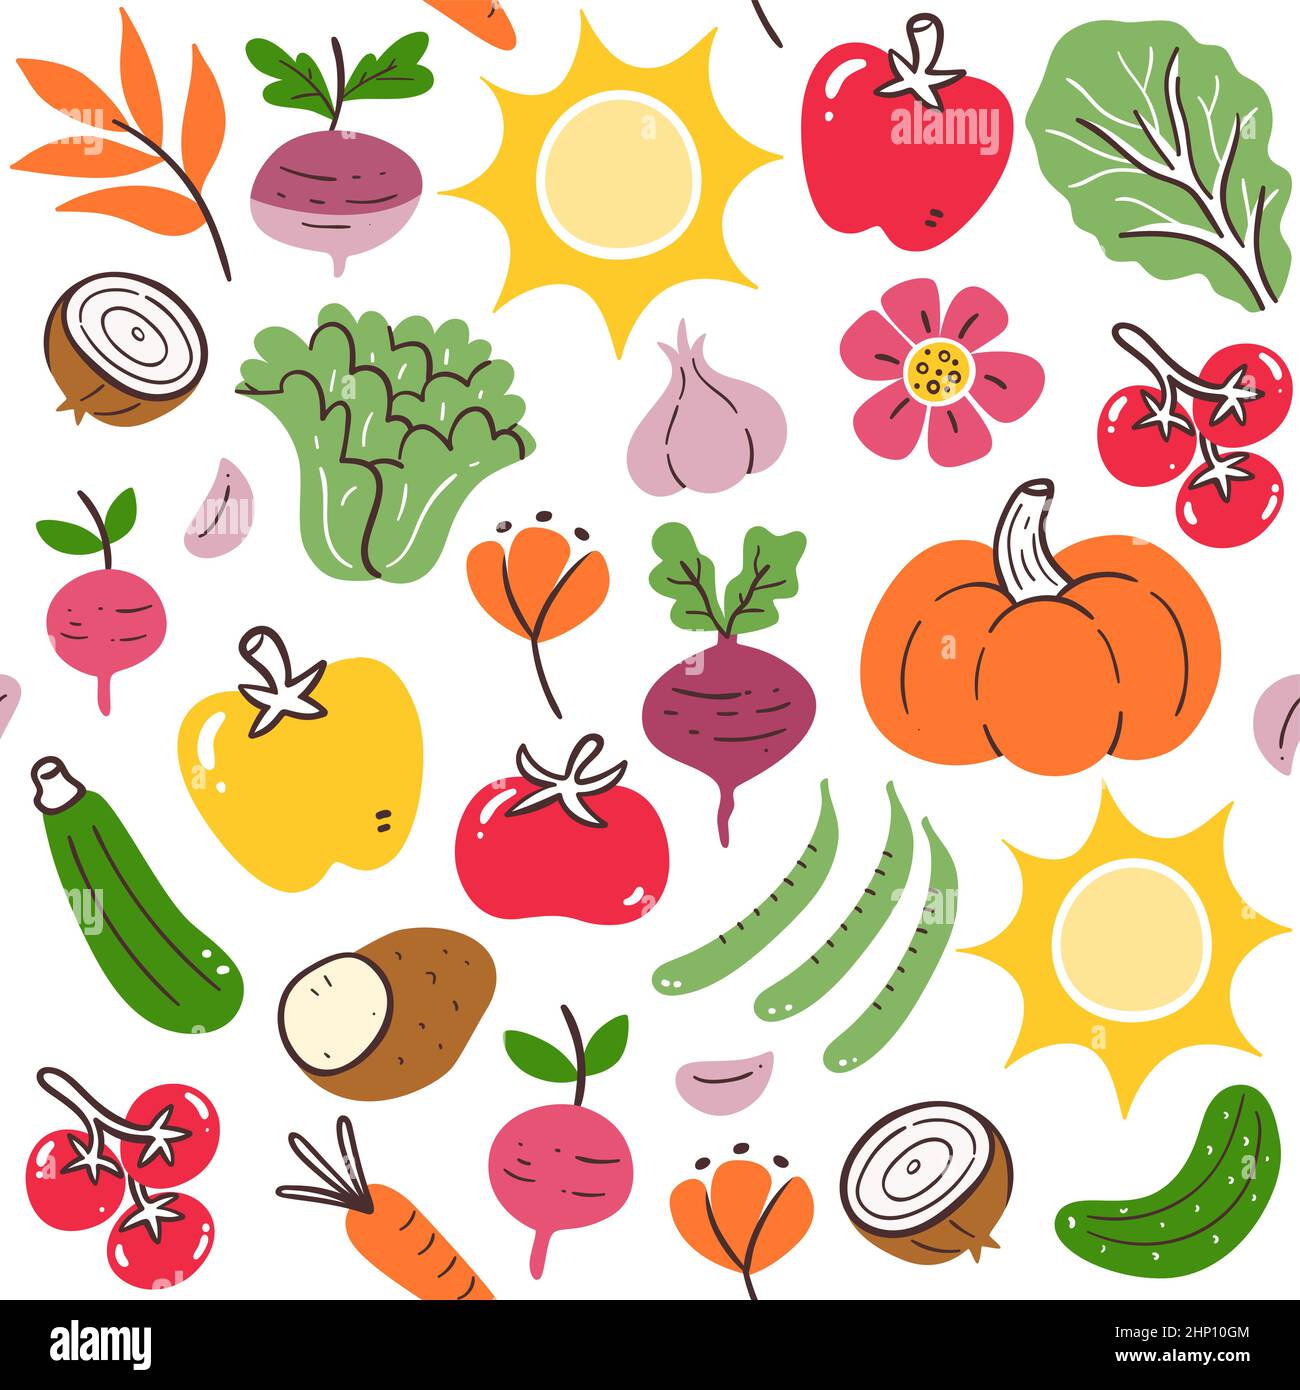 Farbenfrohes, saisonales Gemüse im Sommer mit nahtlosem Muster. Isoliertes Gemüse auf weißem Hintergrund. Vektorgrafik. Stock Vektor